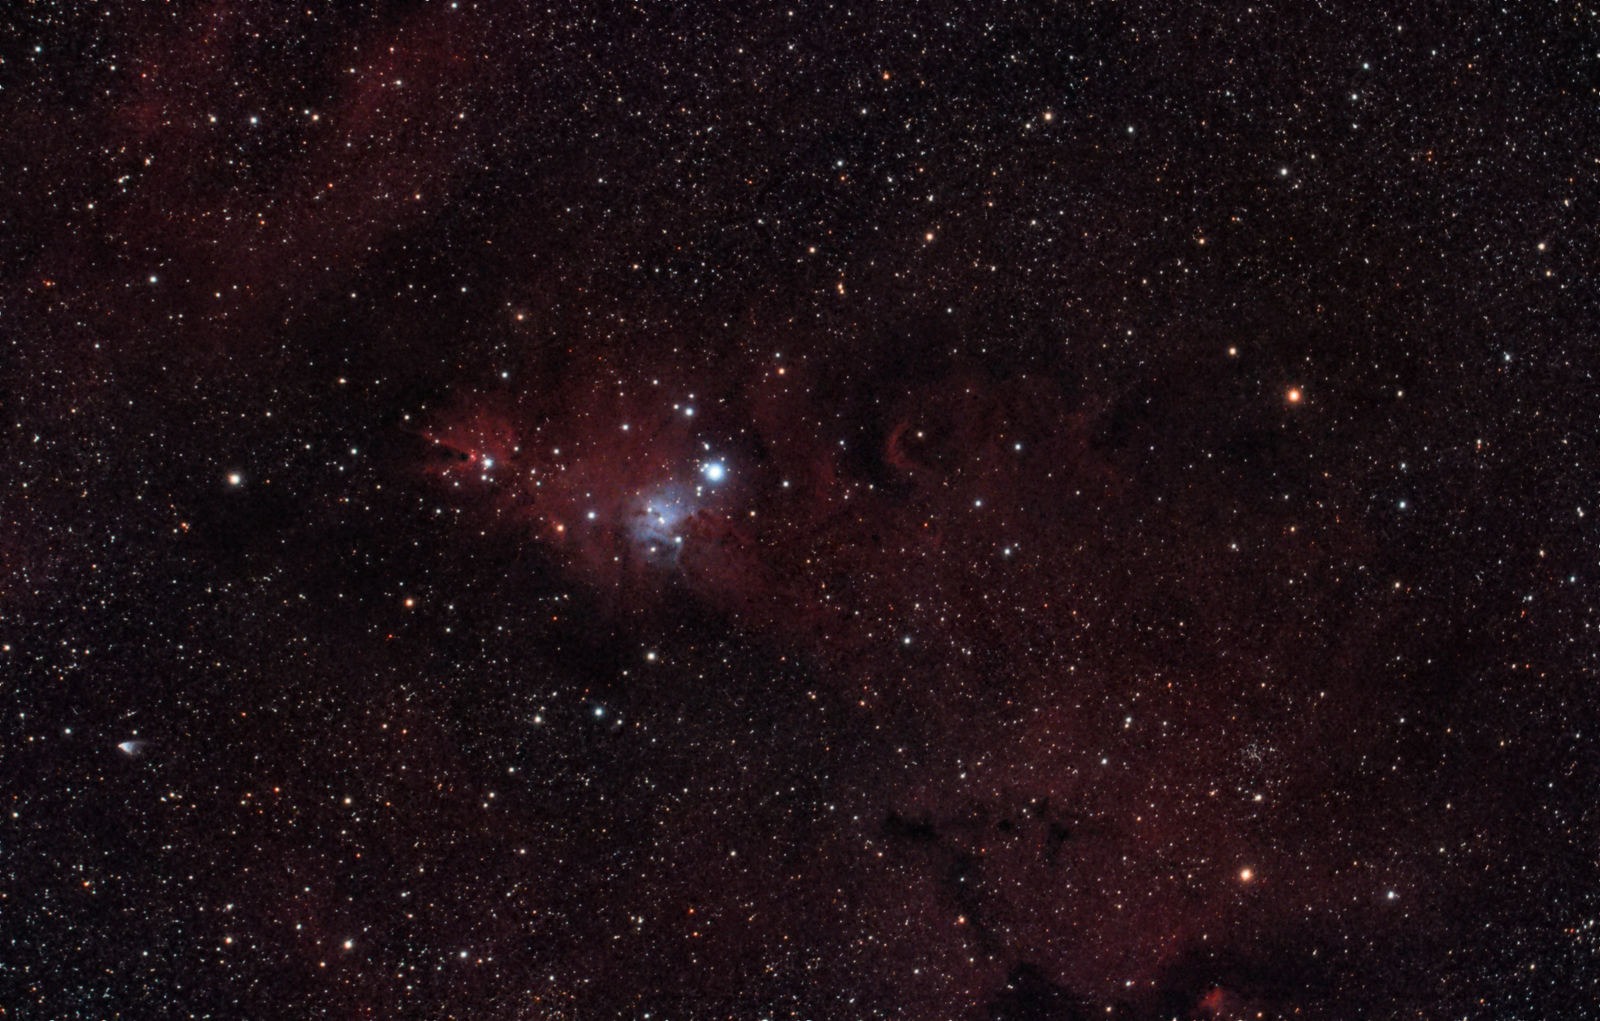 NGC2264 "Cone Nebula and Christmas Tree Cluster"